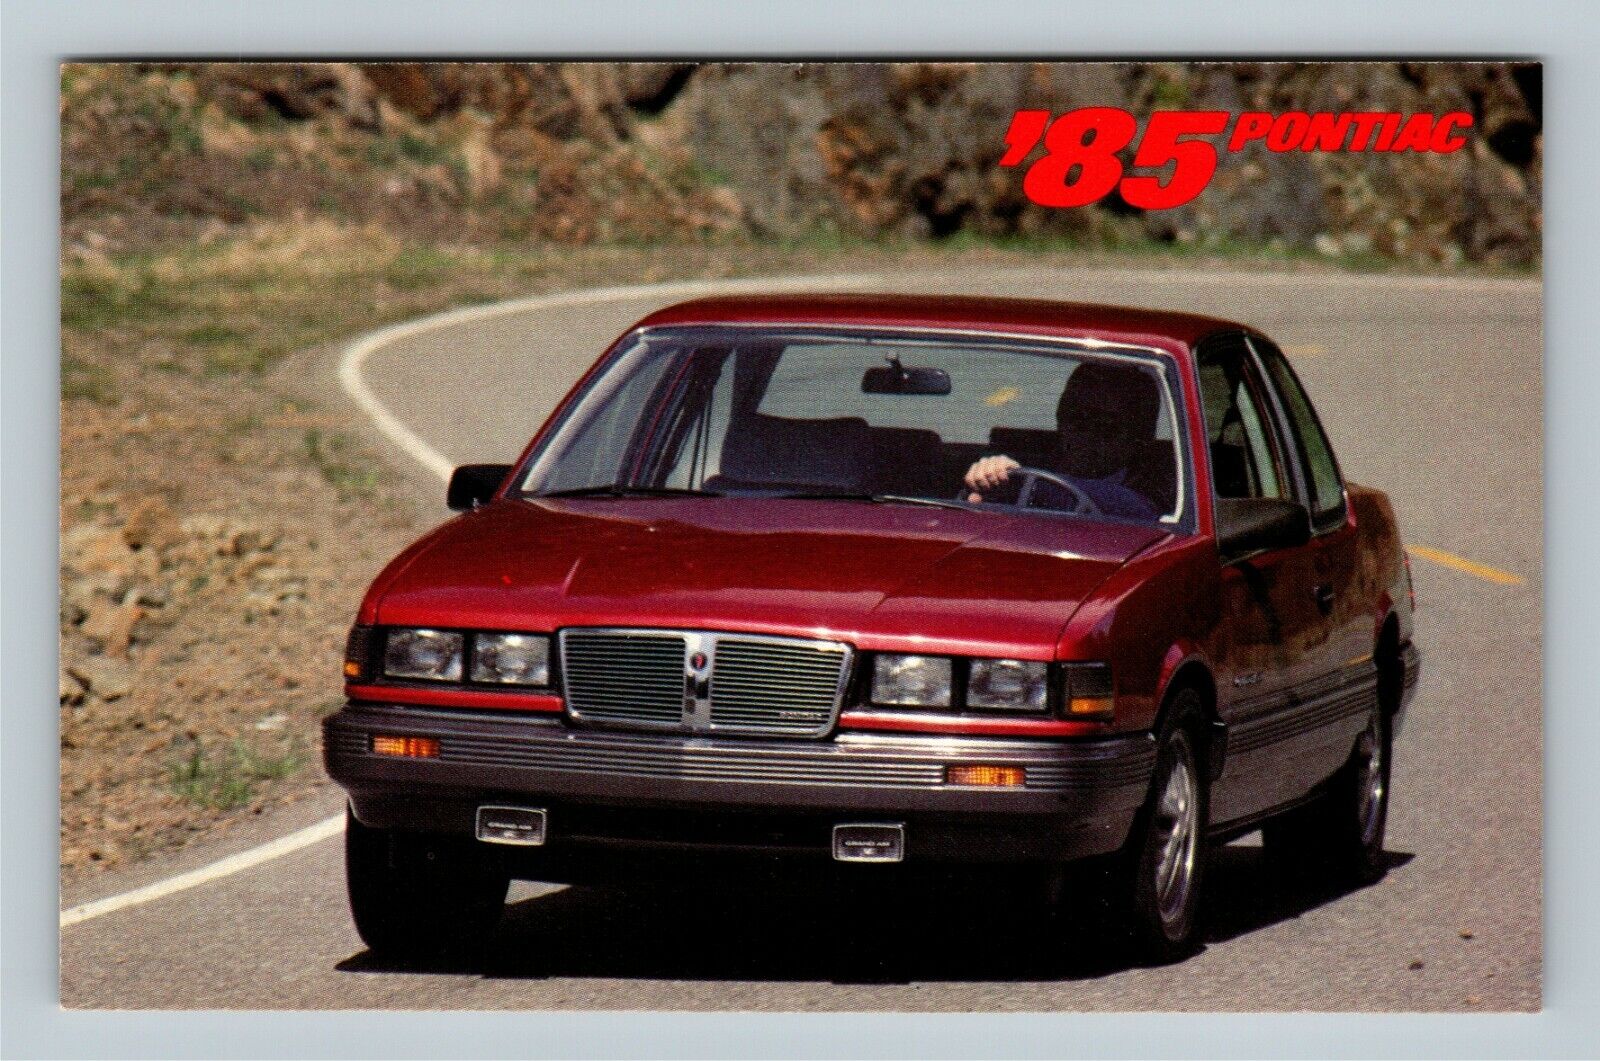 Automobile-1985 Pontiac Grand Am LE Red Vintage Postcard